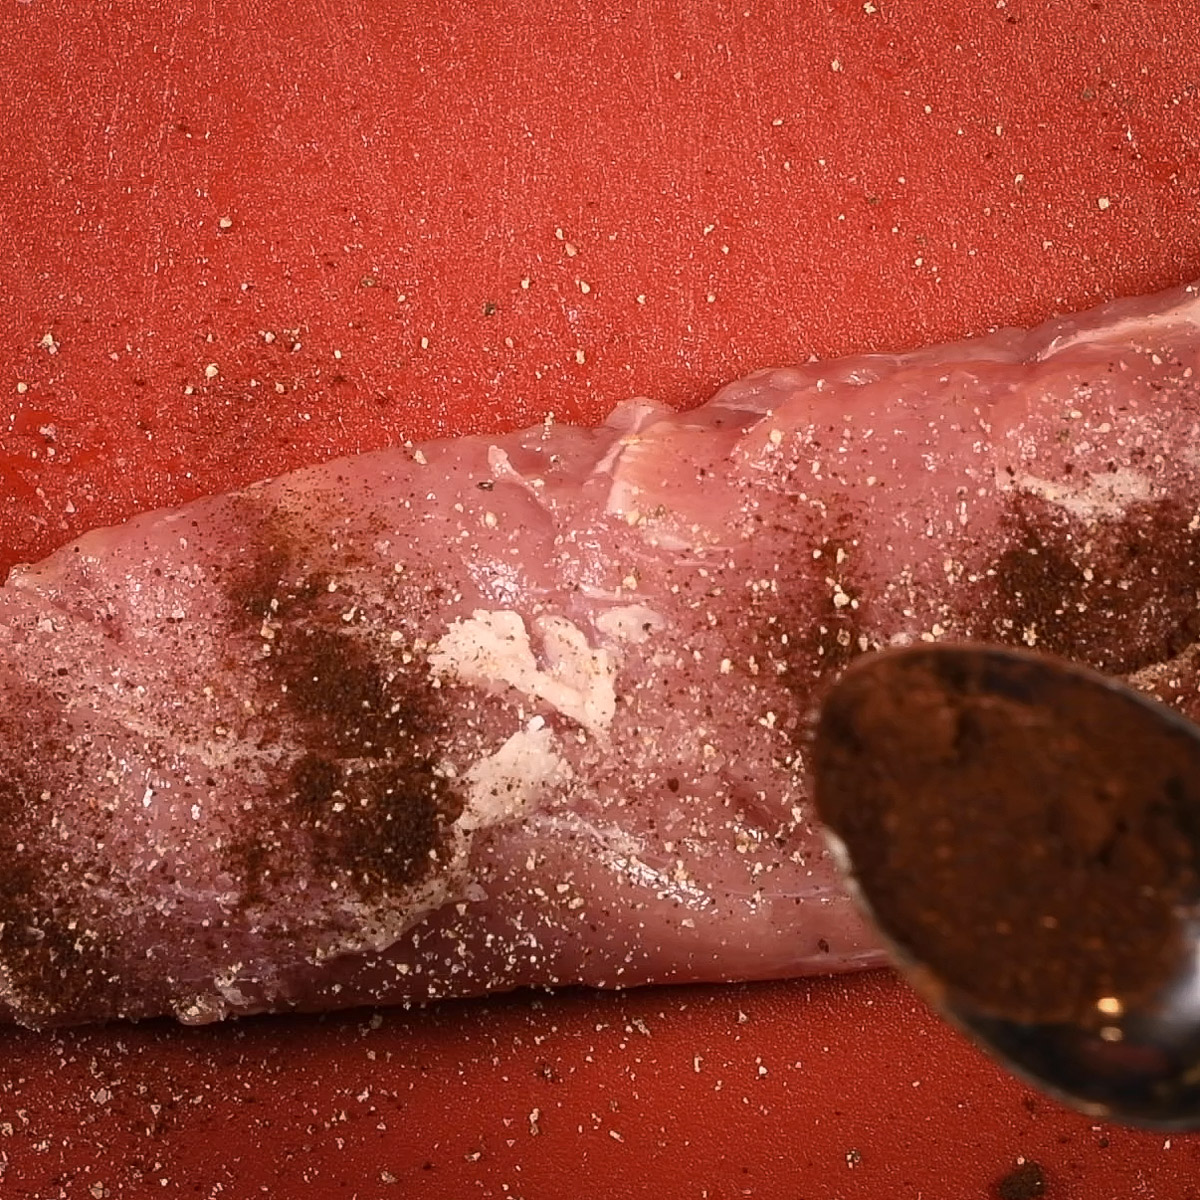 Season the pork tenderloin with kosher salt, freshly ground black pepper and chili powder.